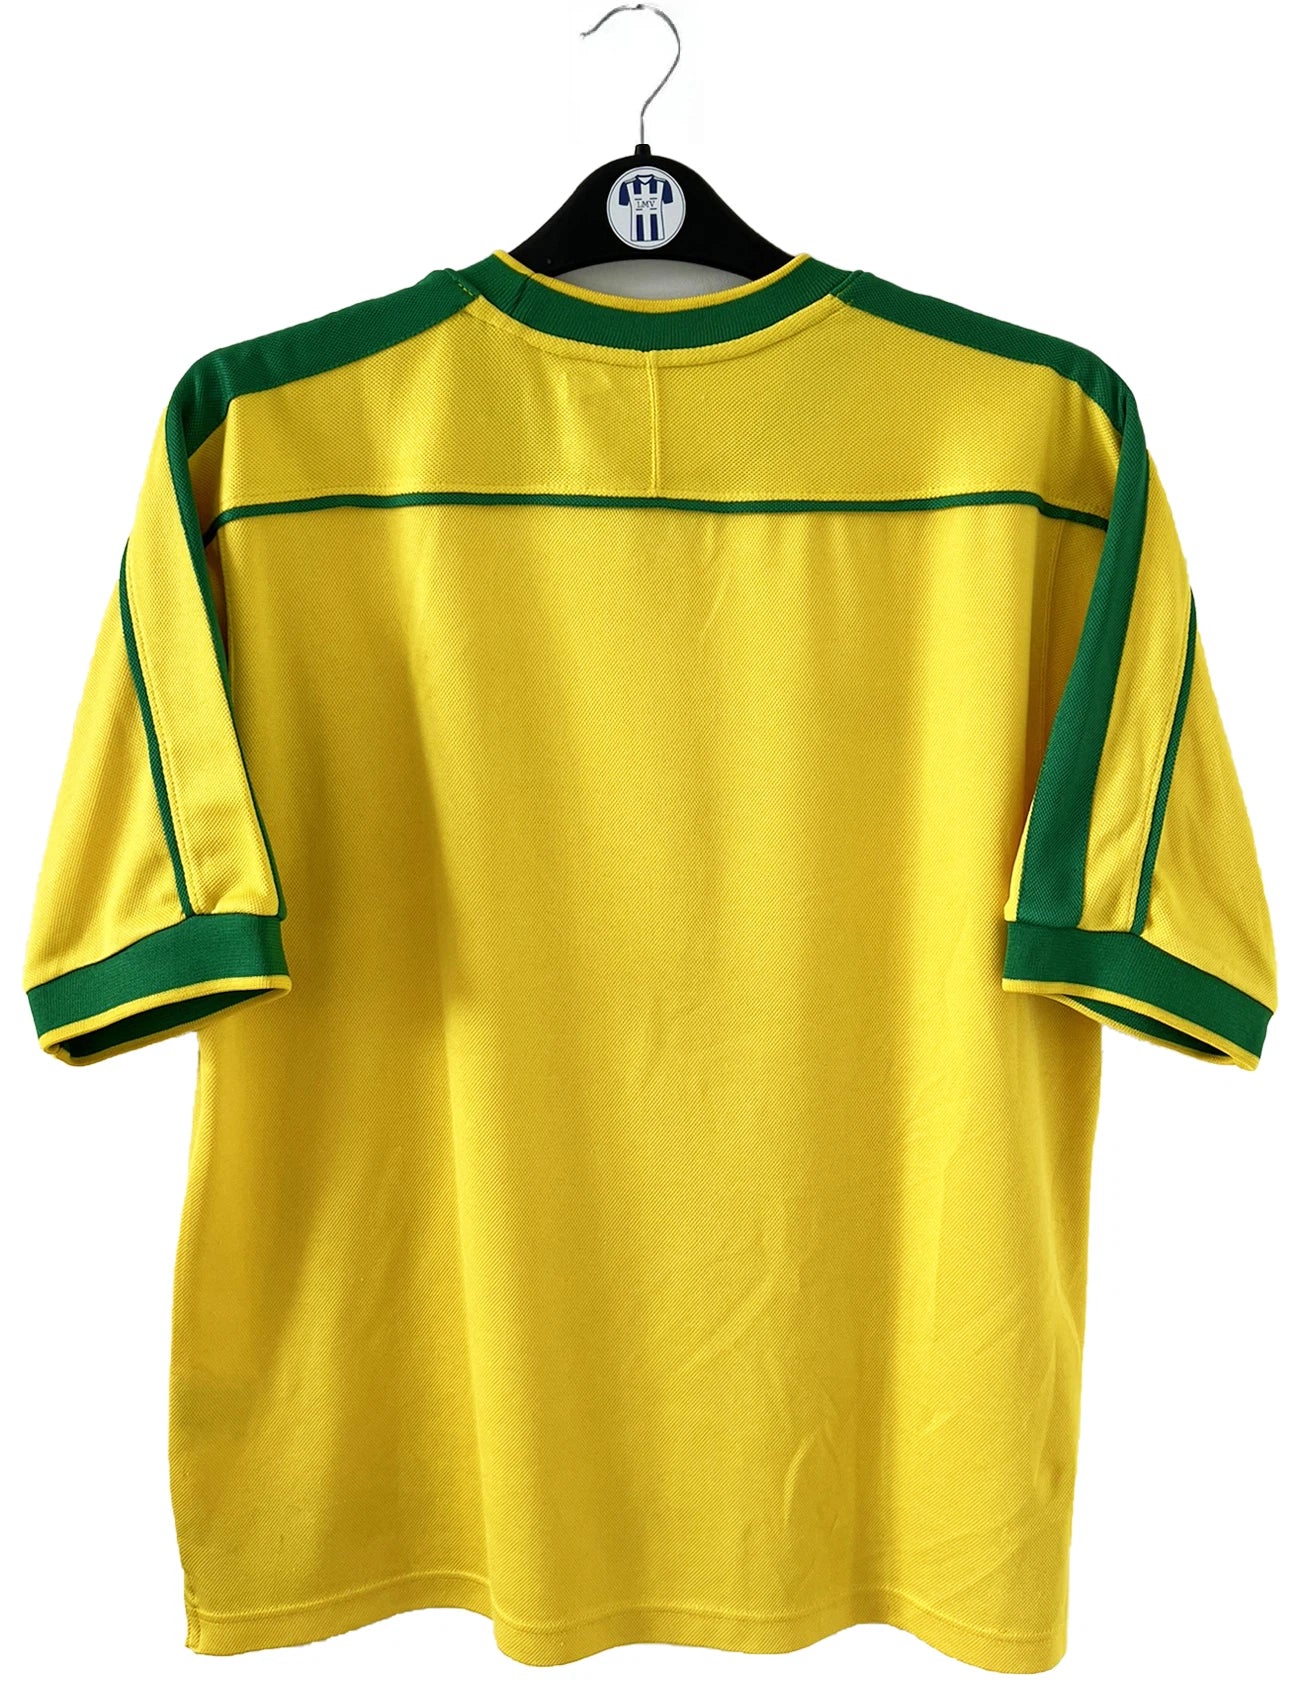 Maillot de foot vintage domicile du bresil 1998. Le maillot est de couleur jaune et vert. On peut retrouver l'équipementier nike. Ils 'agit d'un maillot authentique d'époque.